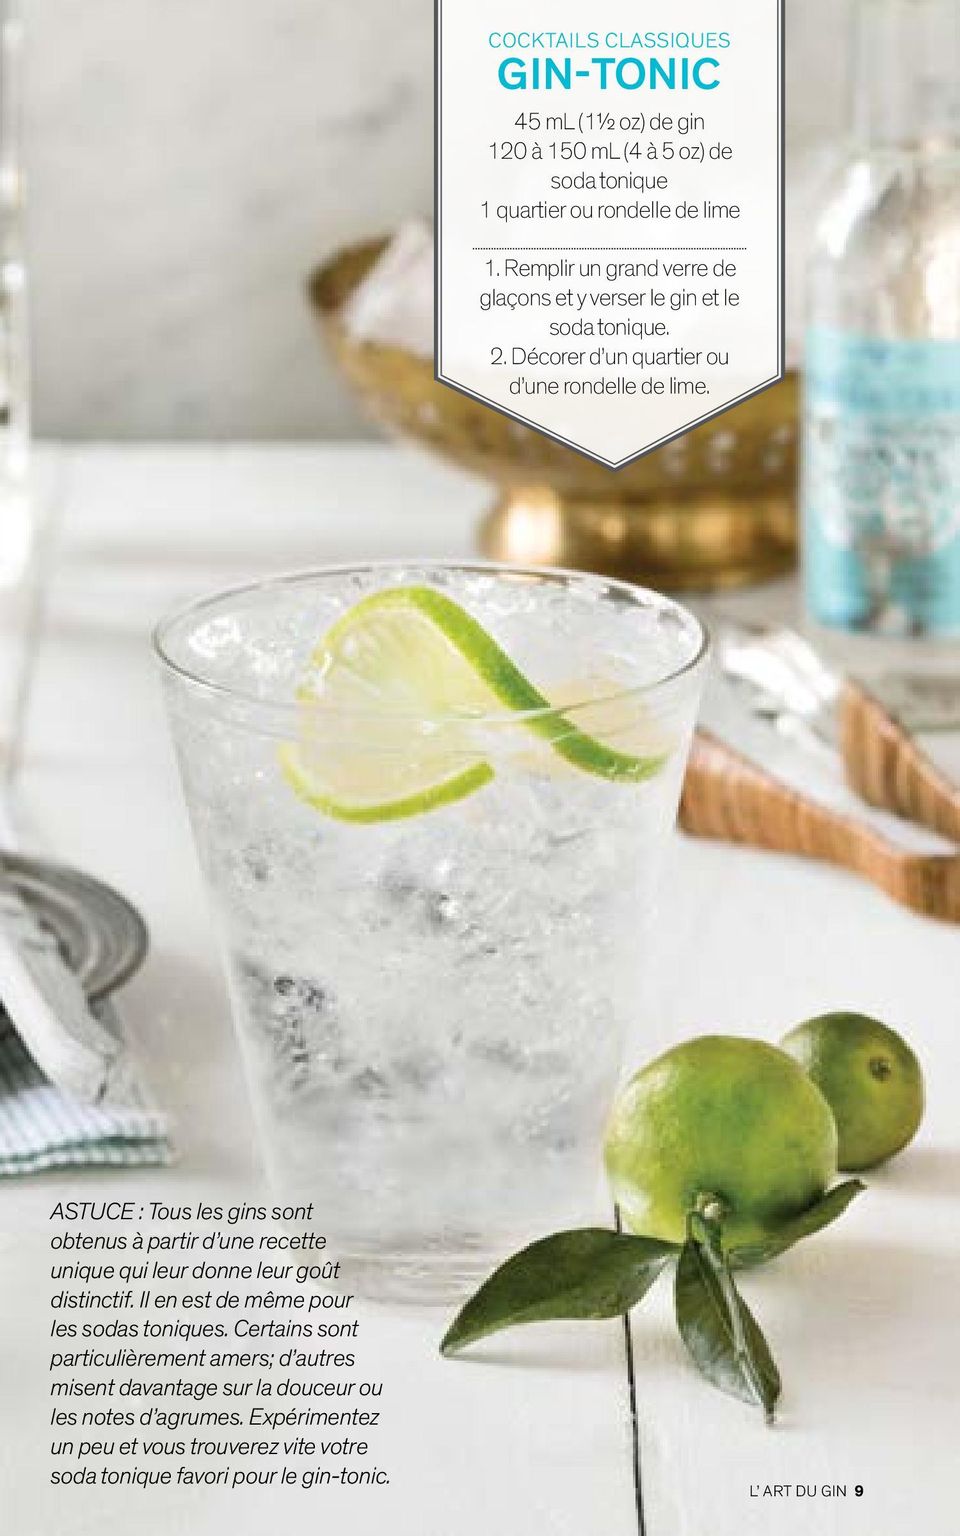 ASTUCE : Tous les gins sont obtenus à partir d une recette unique qui leur donne leur goût distinctif. Il en est de même pour les sodas toniques.